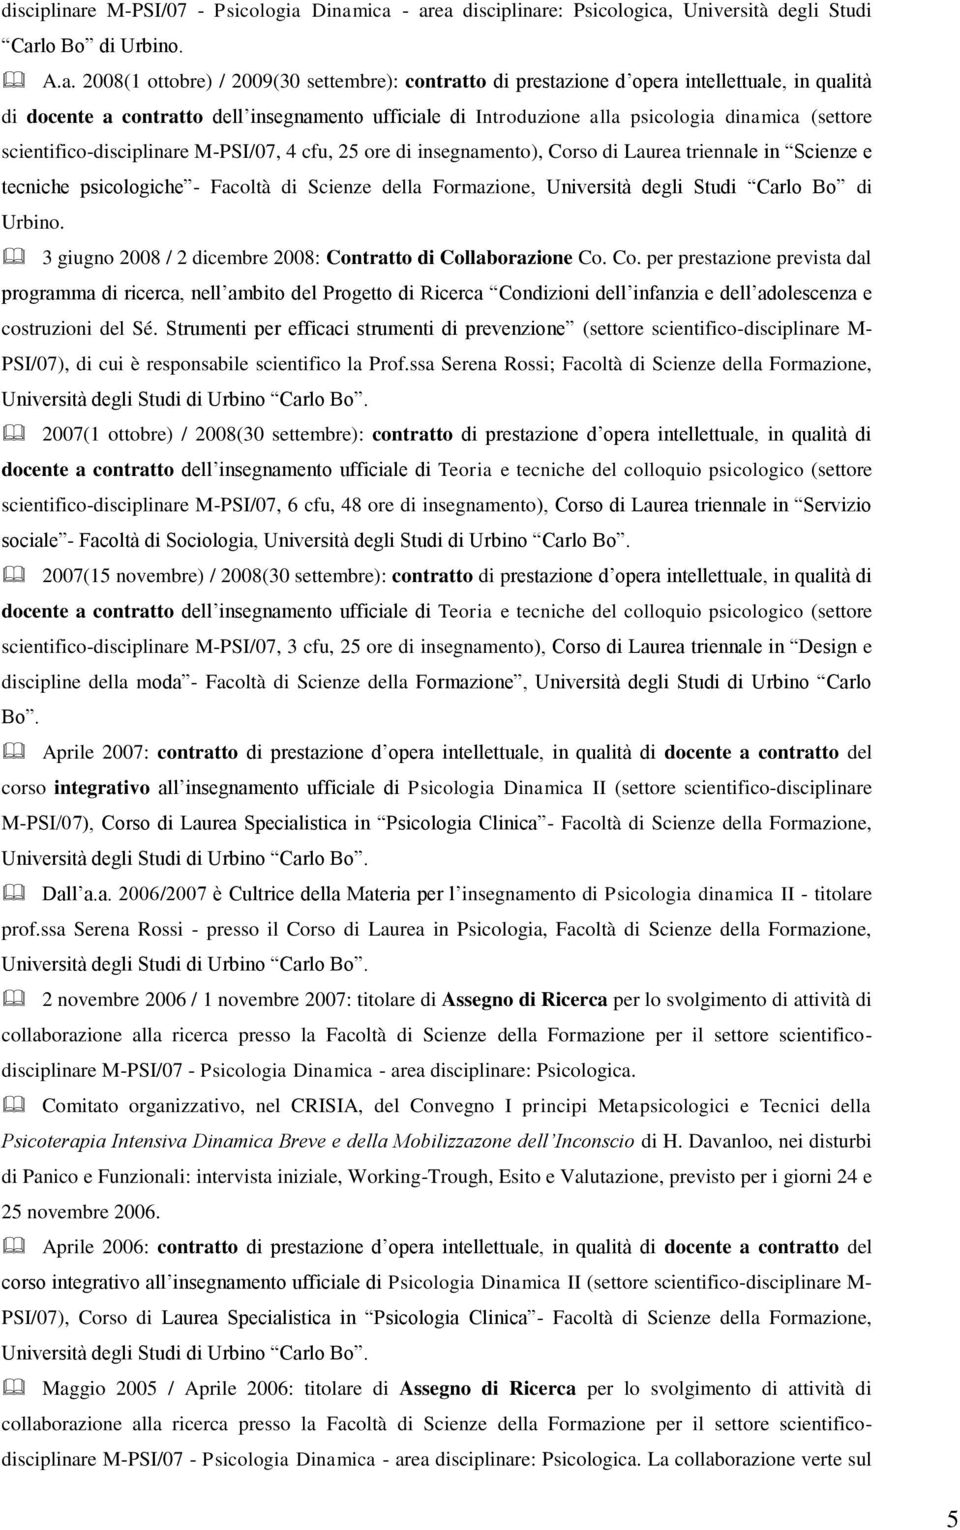 Dinamica - area e: Psicologica, Università degli Studi Carlo Bo di Urbino. A.a. 2008(1 ottobre) / 2009(30 settembre): contratto di prestazione d opera intellettuale, in qualità di docente a contratto